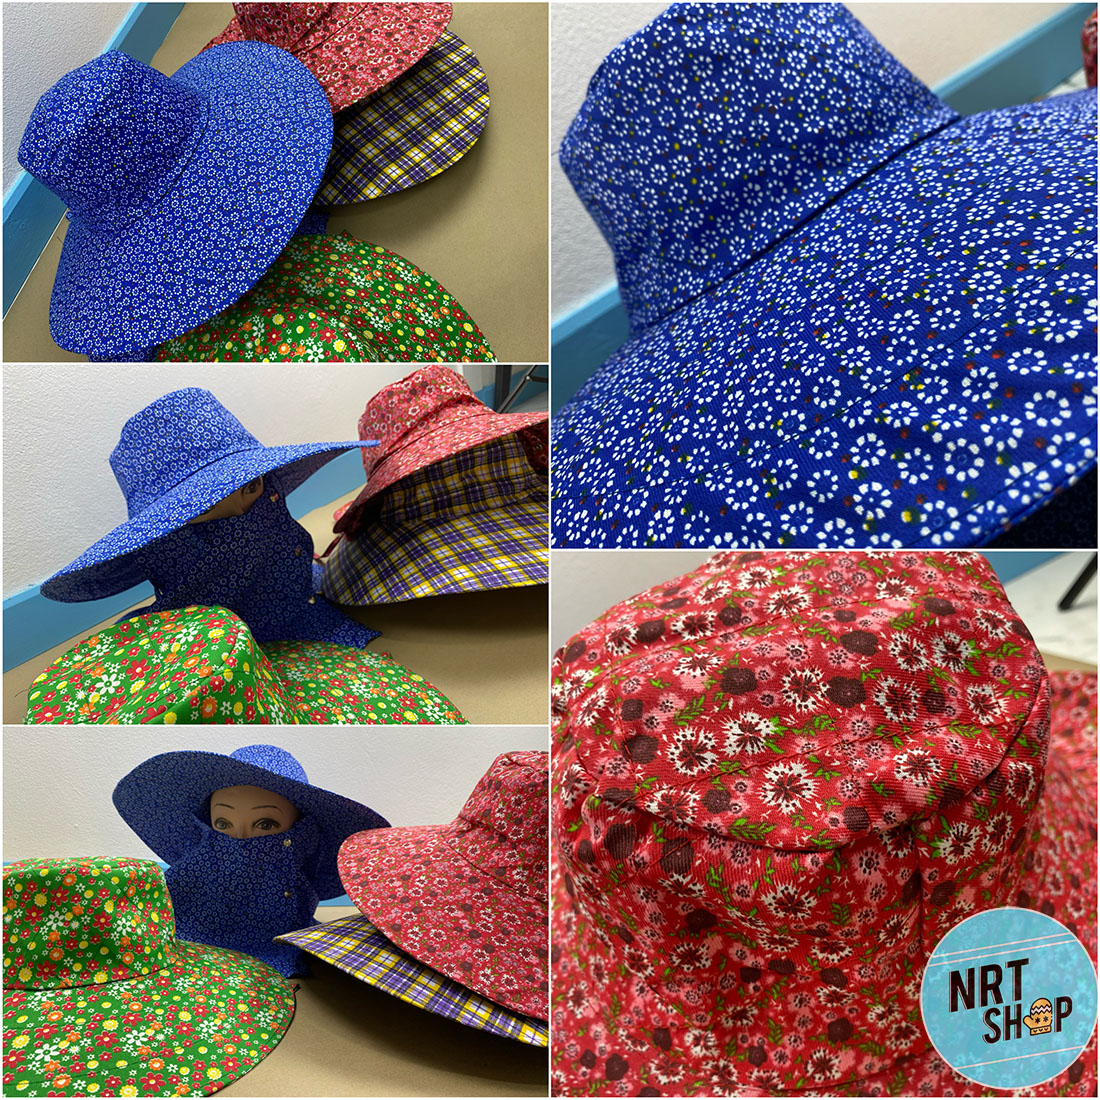 หมวกผ้ากันแดด หมวกผ้า มีผ้าปิดหน้าและลำคอ สามารถกันแดดได้ดี  หมวกมีขนาด 43 เซนติเมตร และ ขนาด 36 เซนติเมตร สิค้าตรงปก จัดส่งตรงเวลา